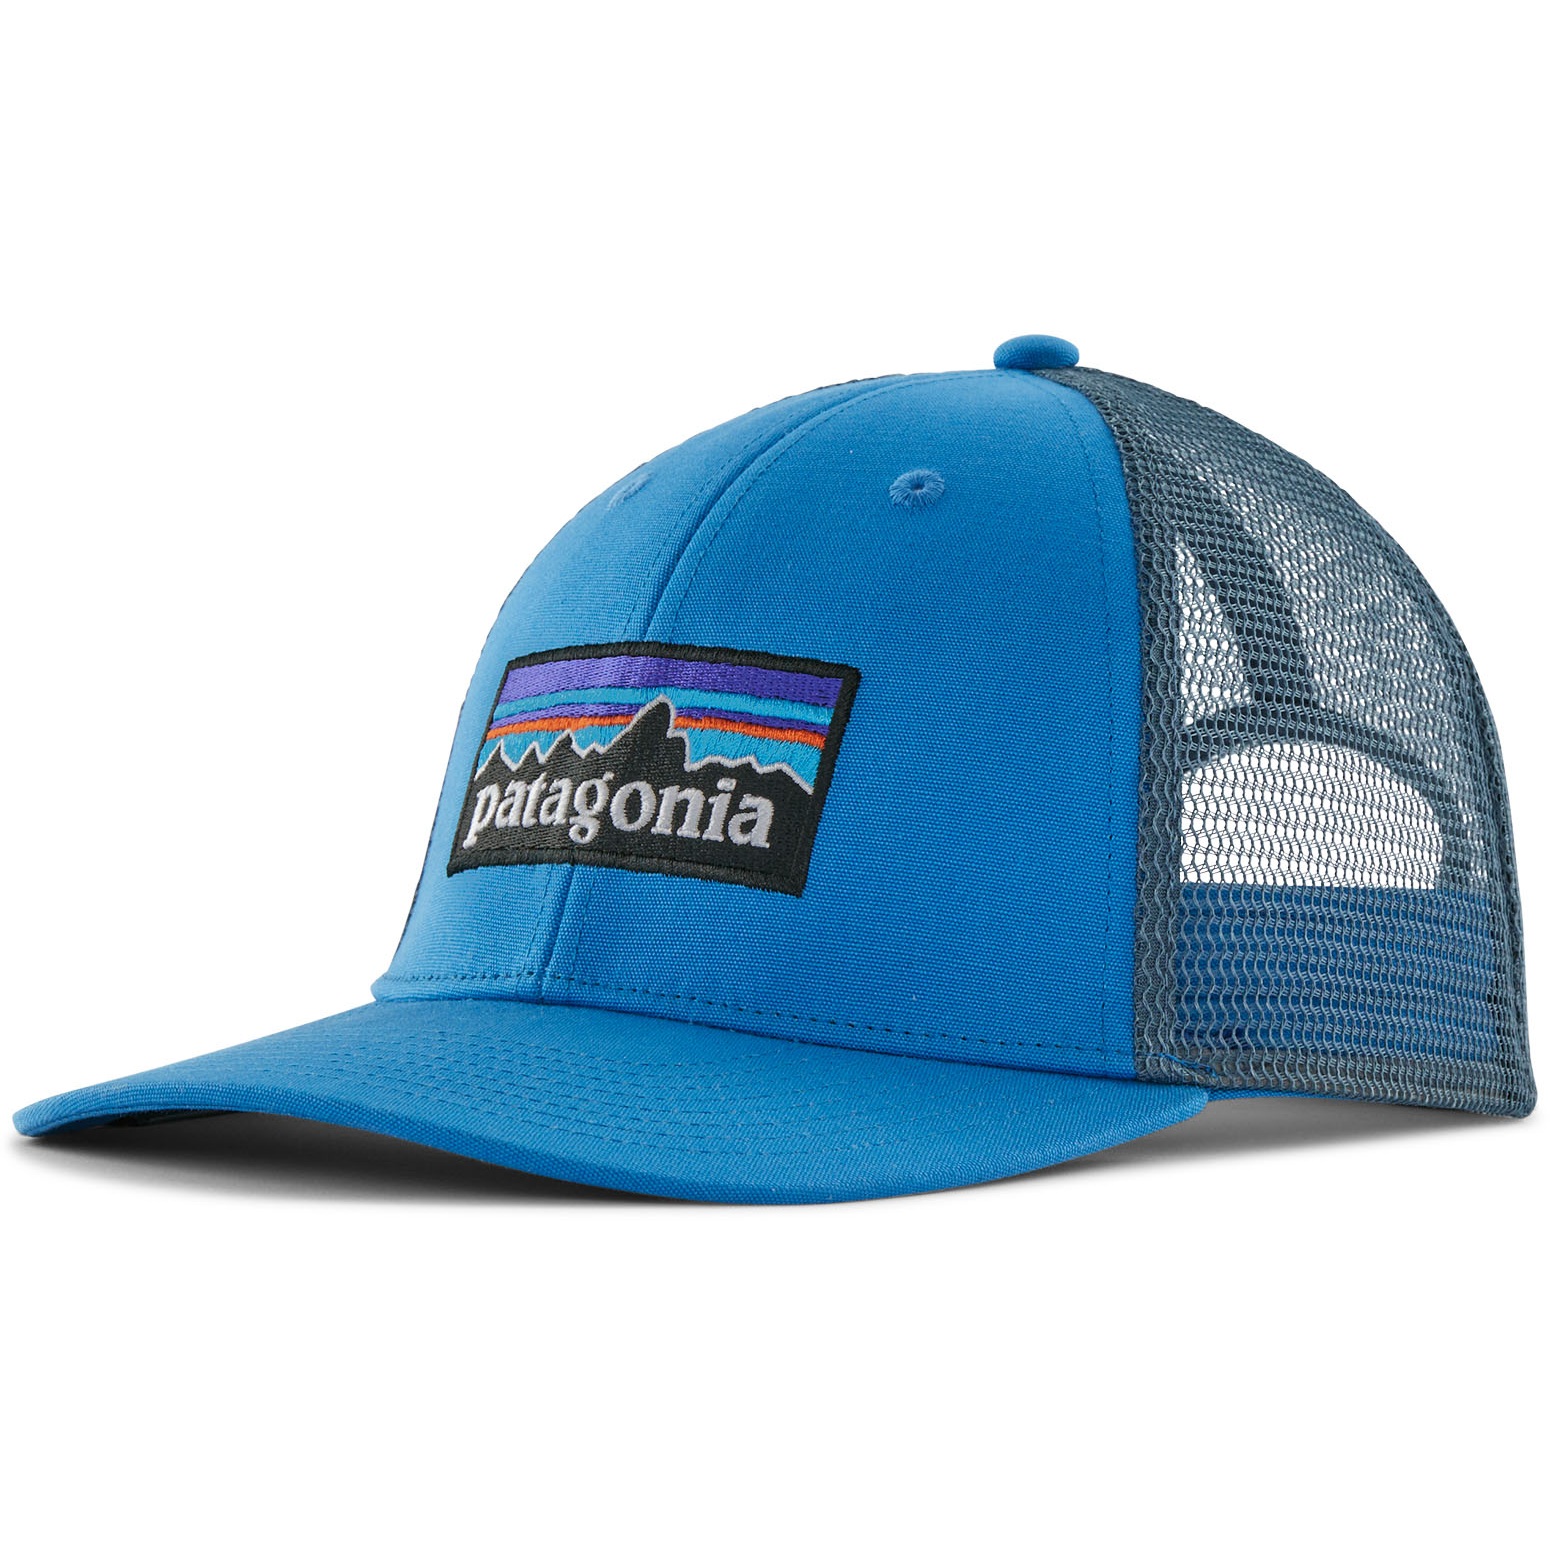 Produktbild von Patagonia P-6 Logo LoPro Trucker Cap - Vessel Blue